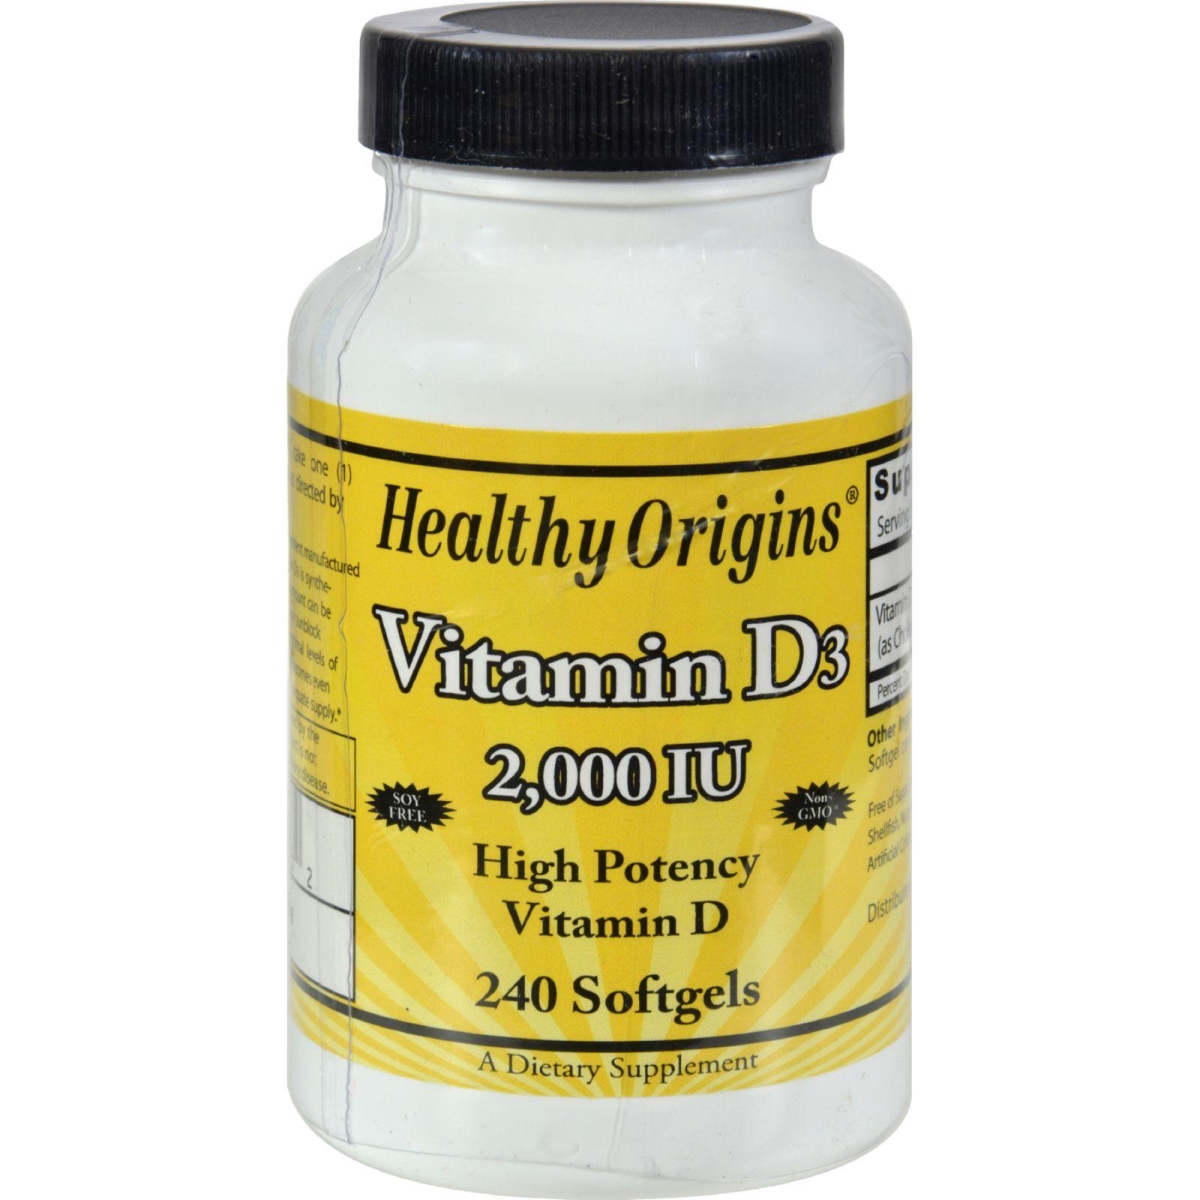 Hg1510478 Vitamin D3 - 2000 Iu, 240 Softgels